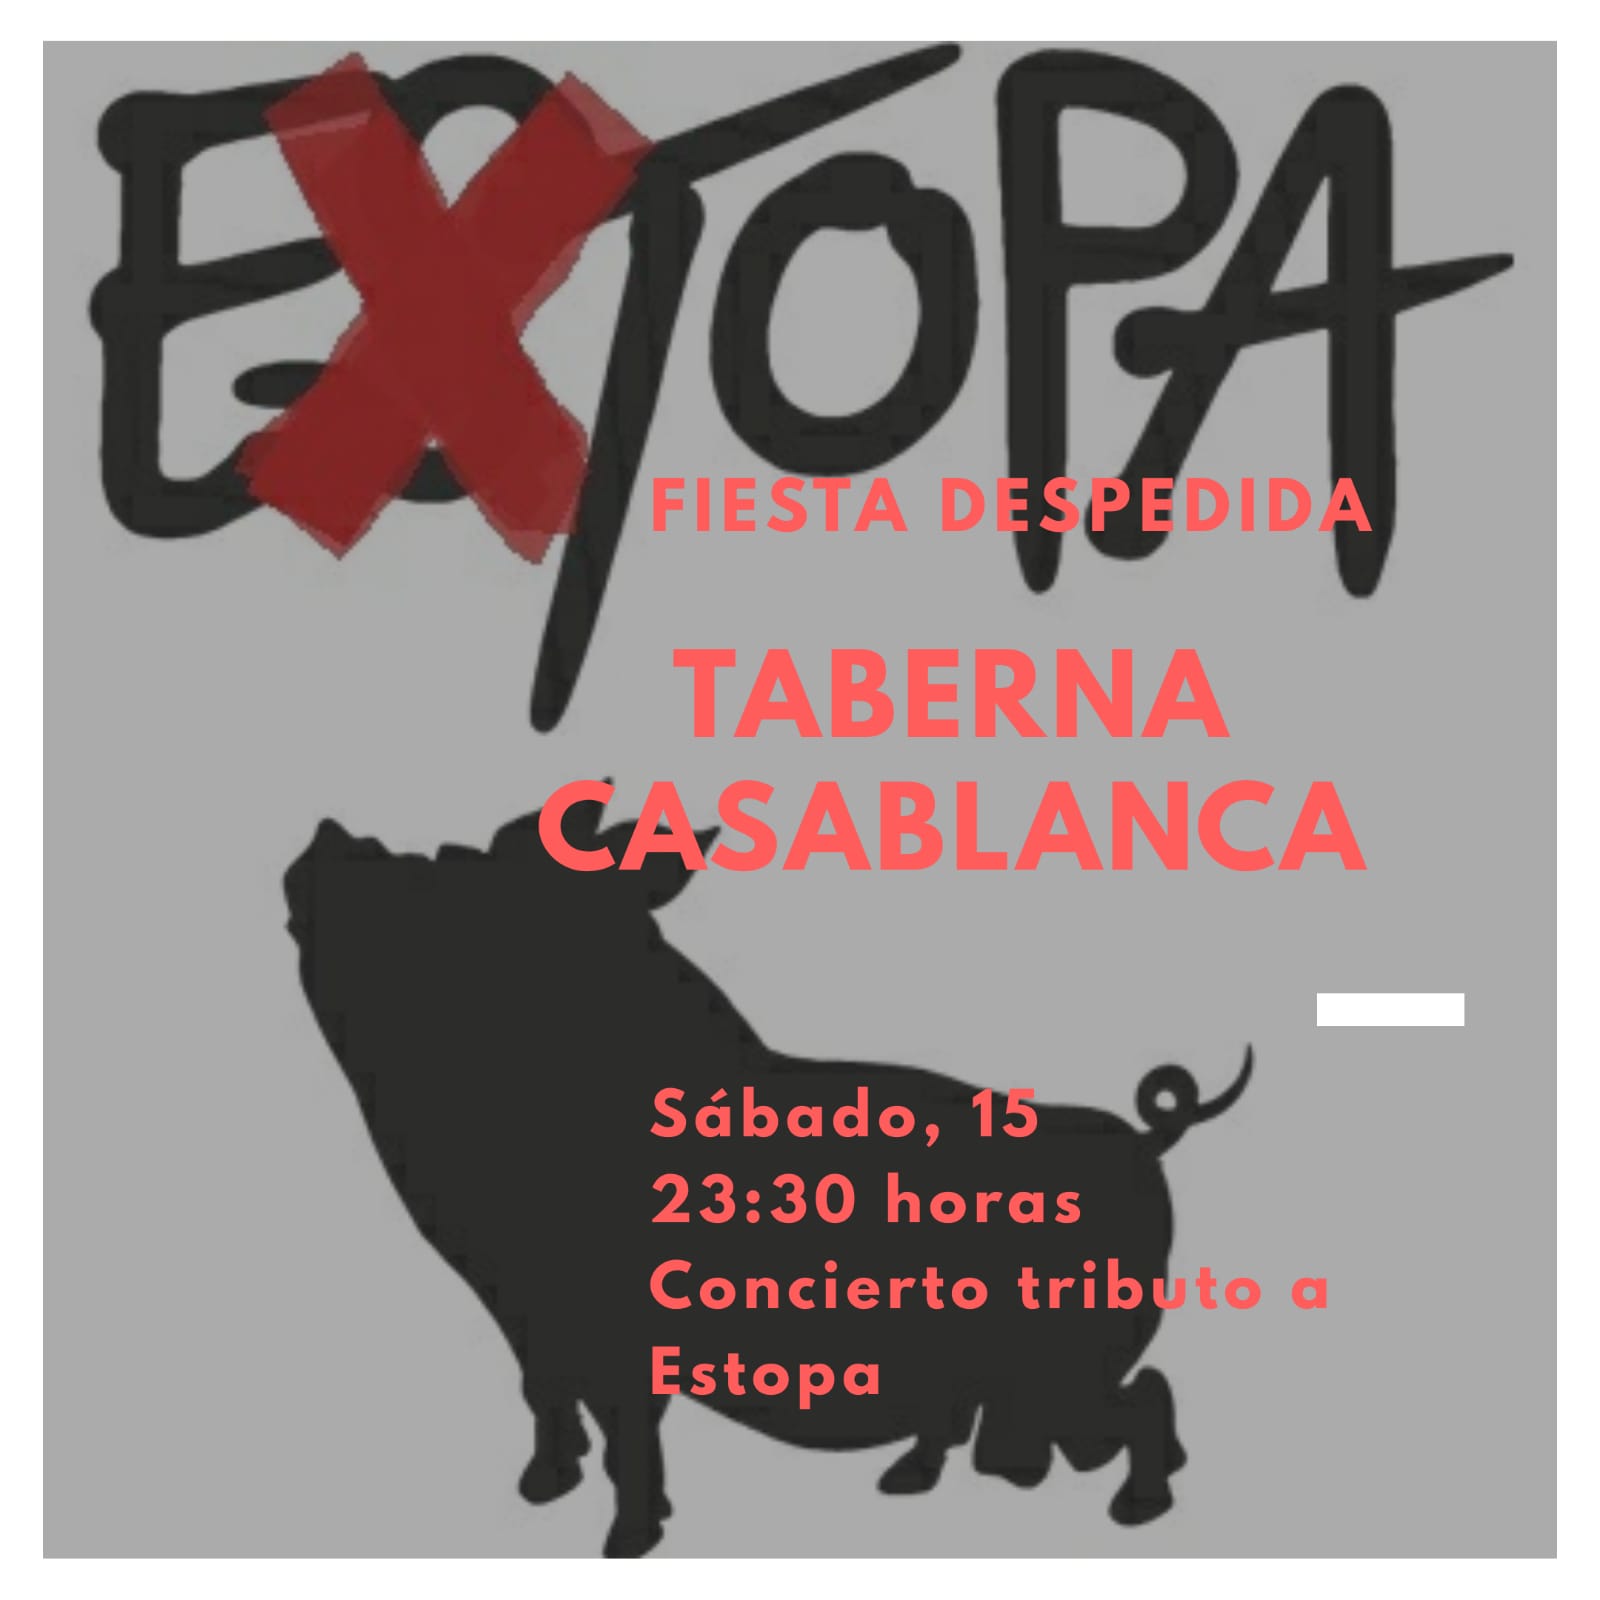 Extopa tributo a Estopa en Trujillo y Oliva de la Frontera el mismo día